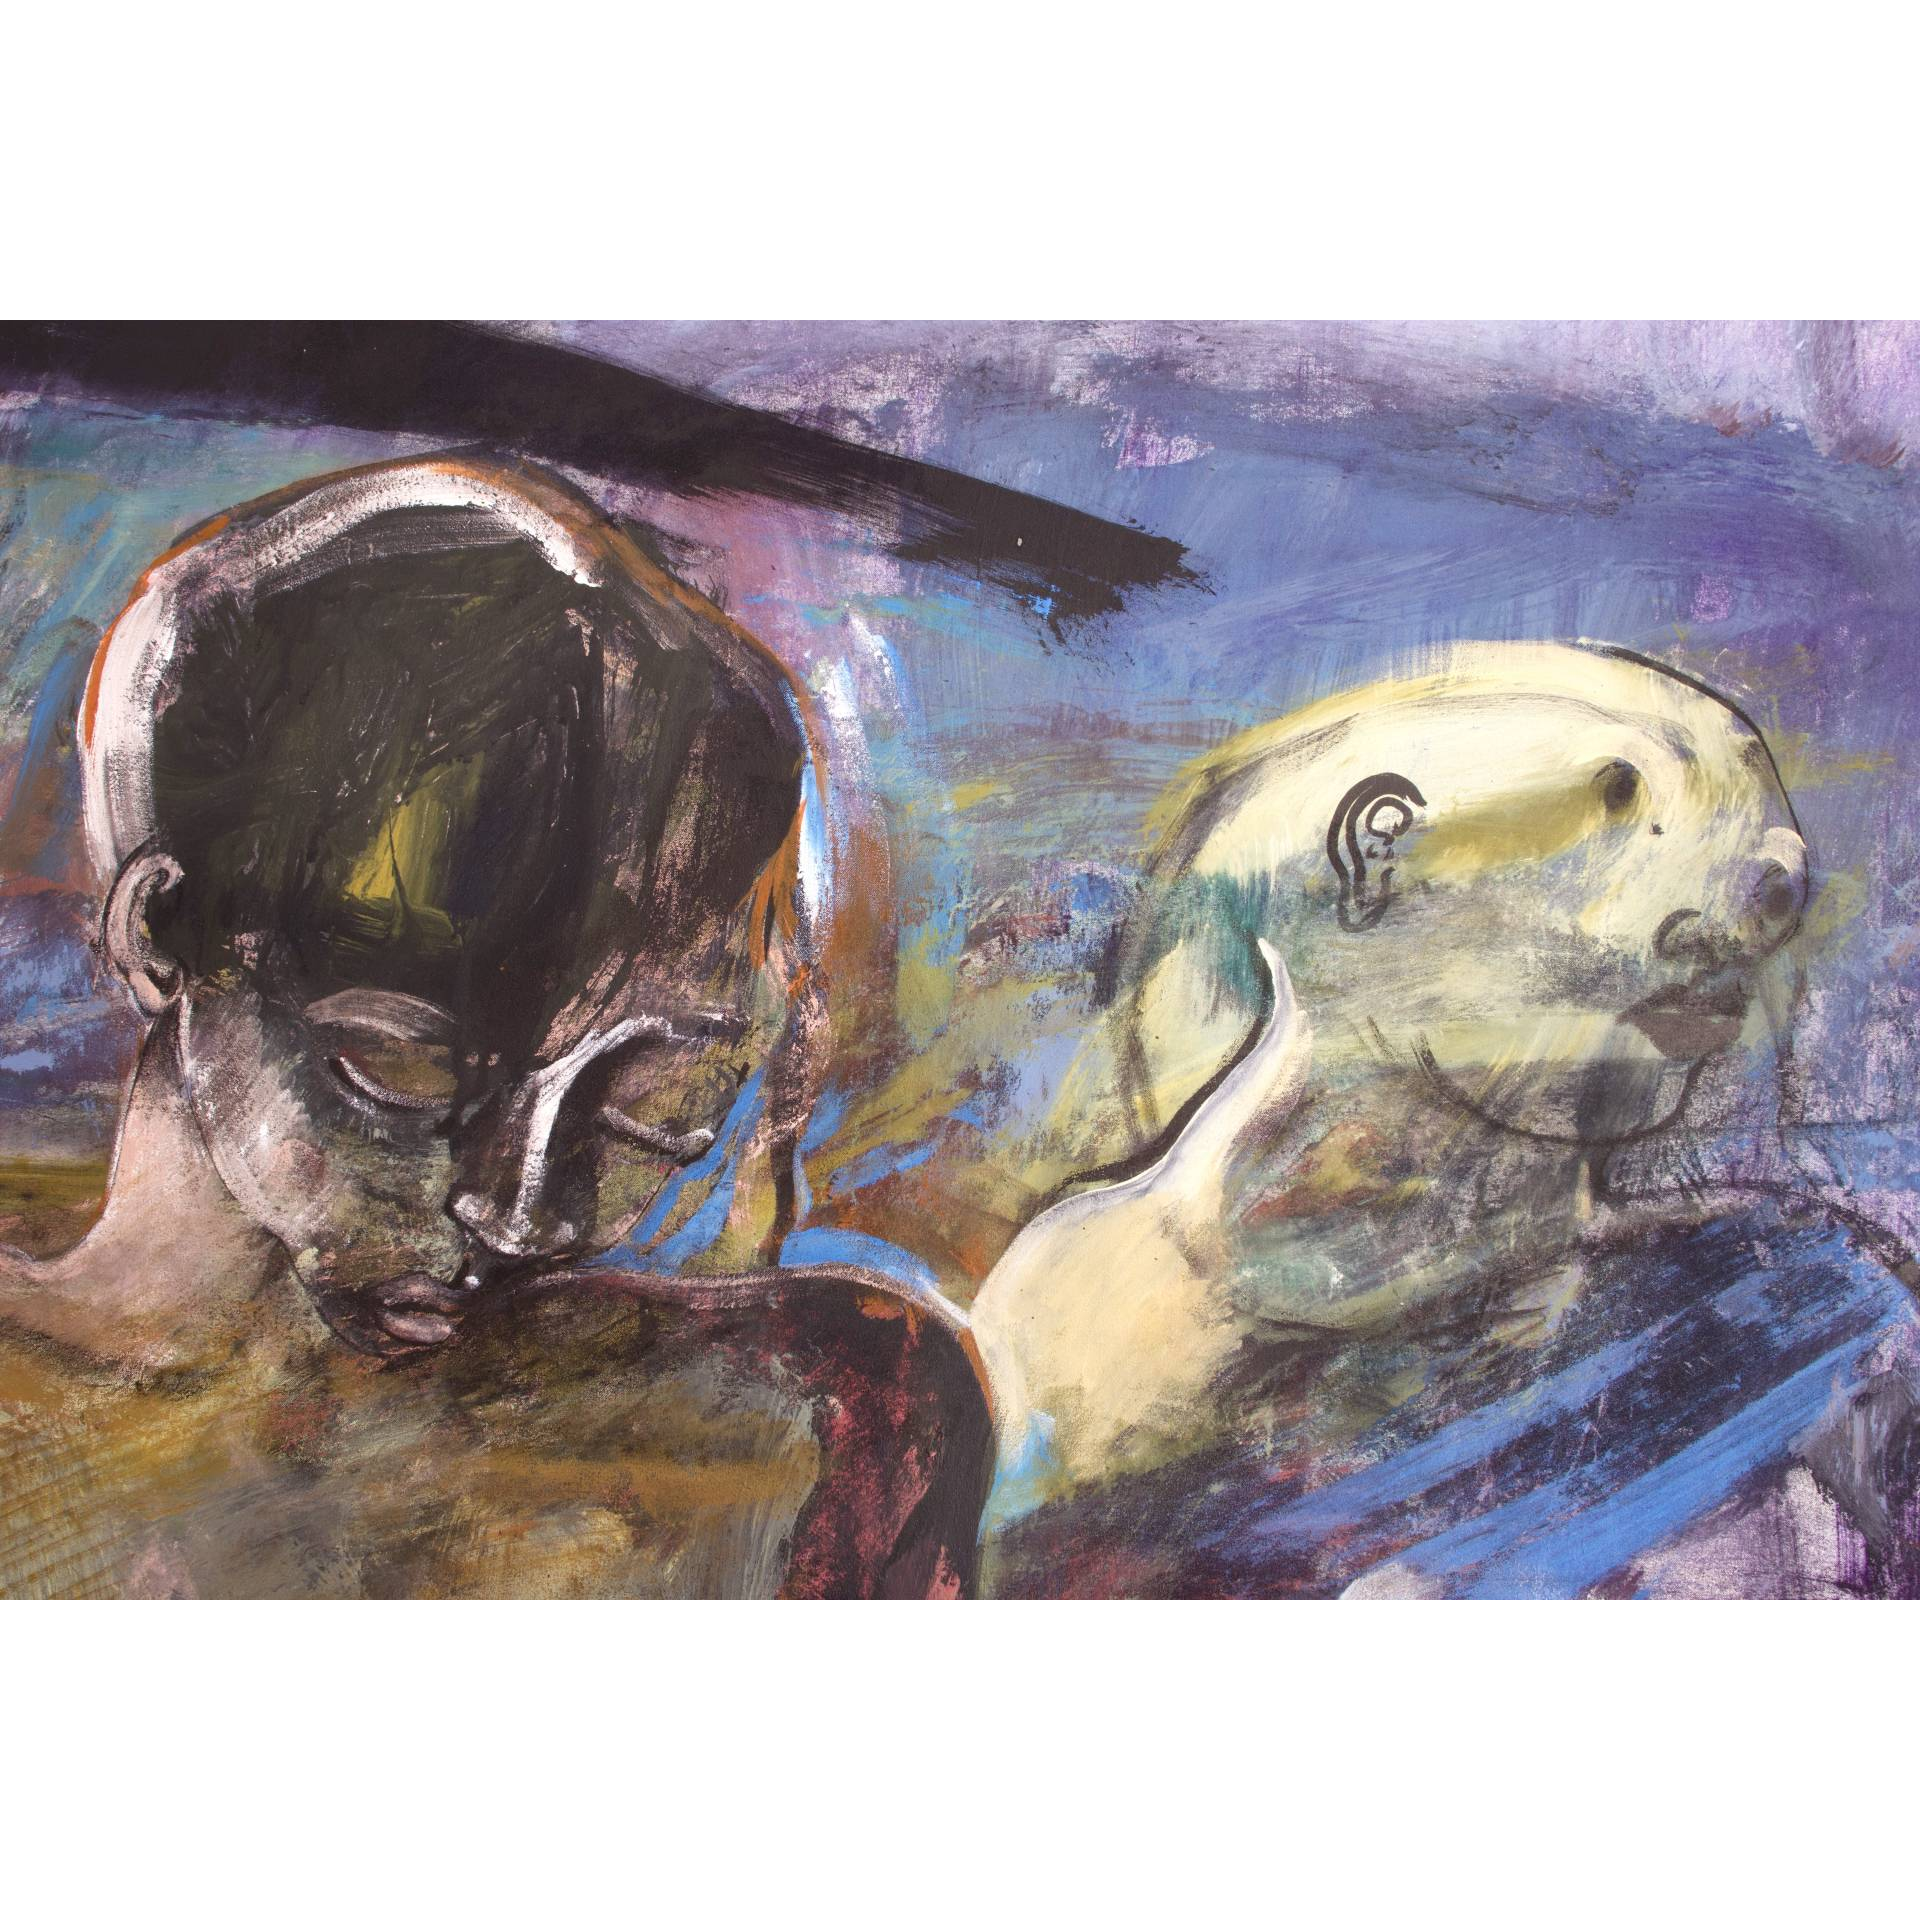 Francky CRIQUET, Qui ne ressemble à rien, acrylique sur toile, 205 x 138 cm